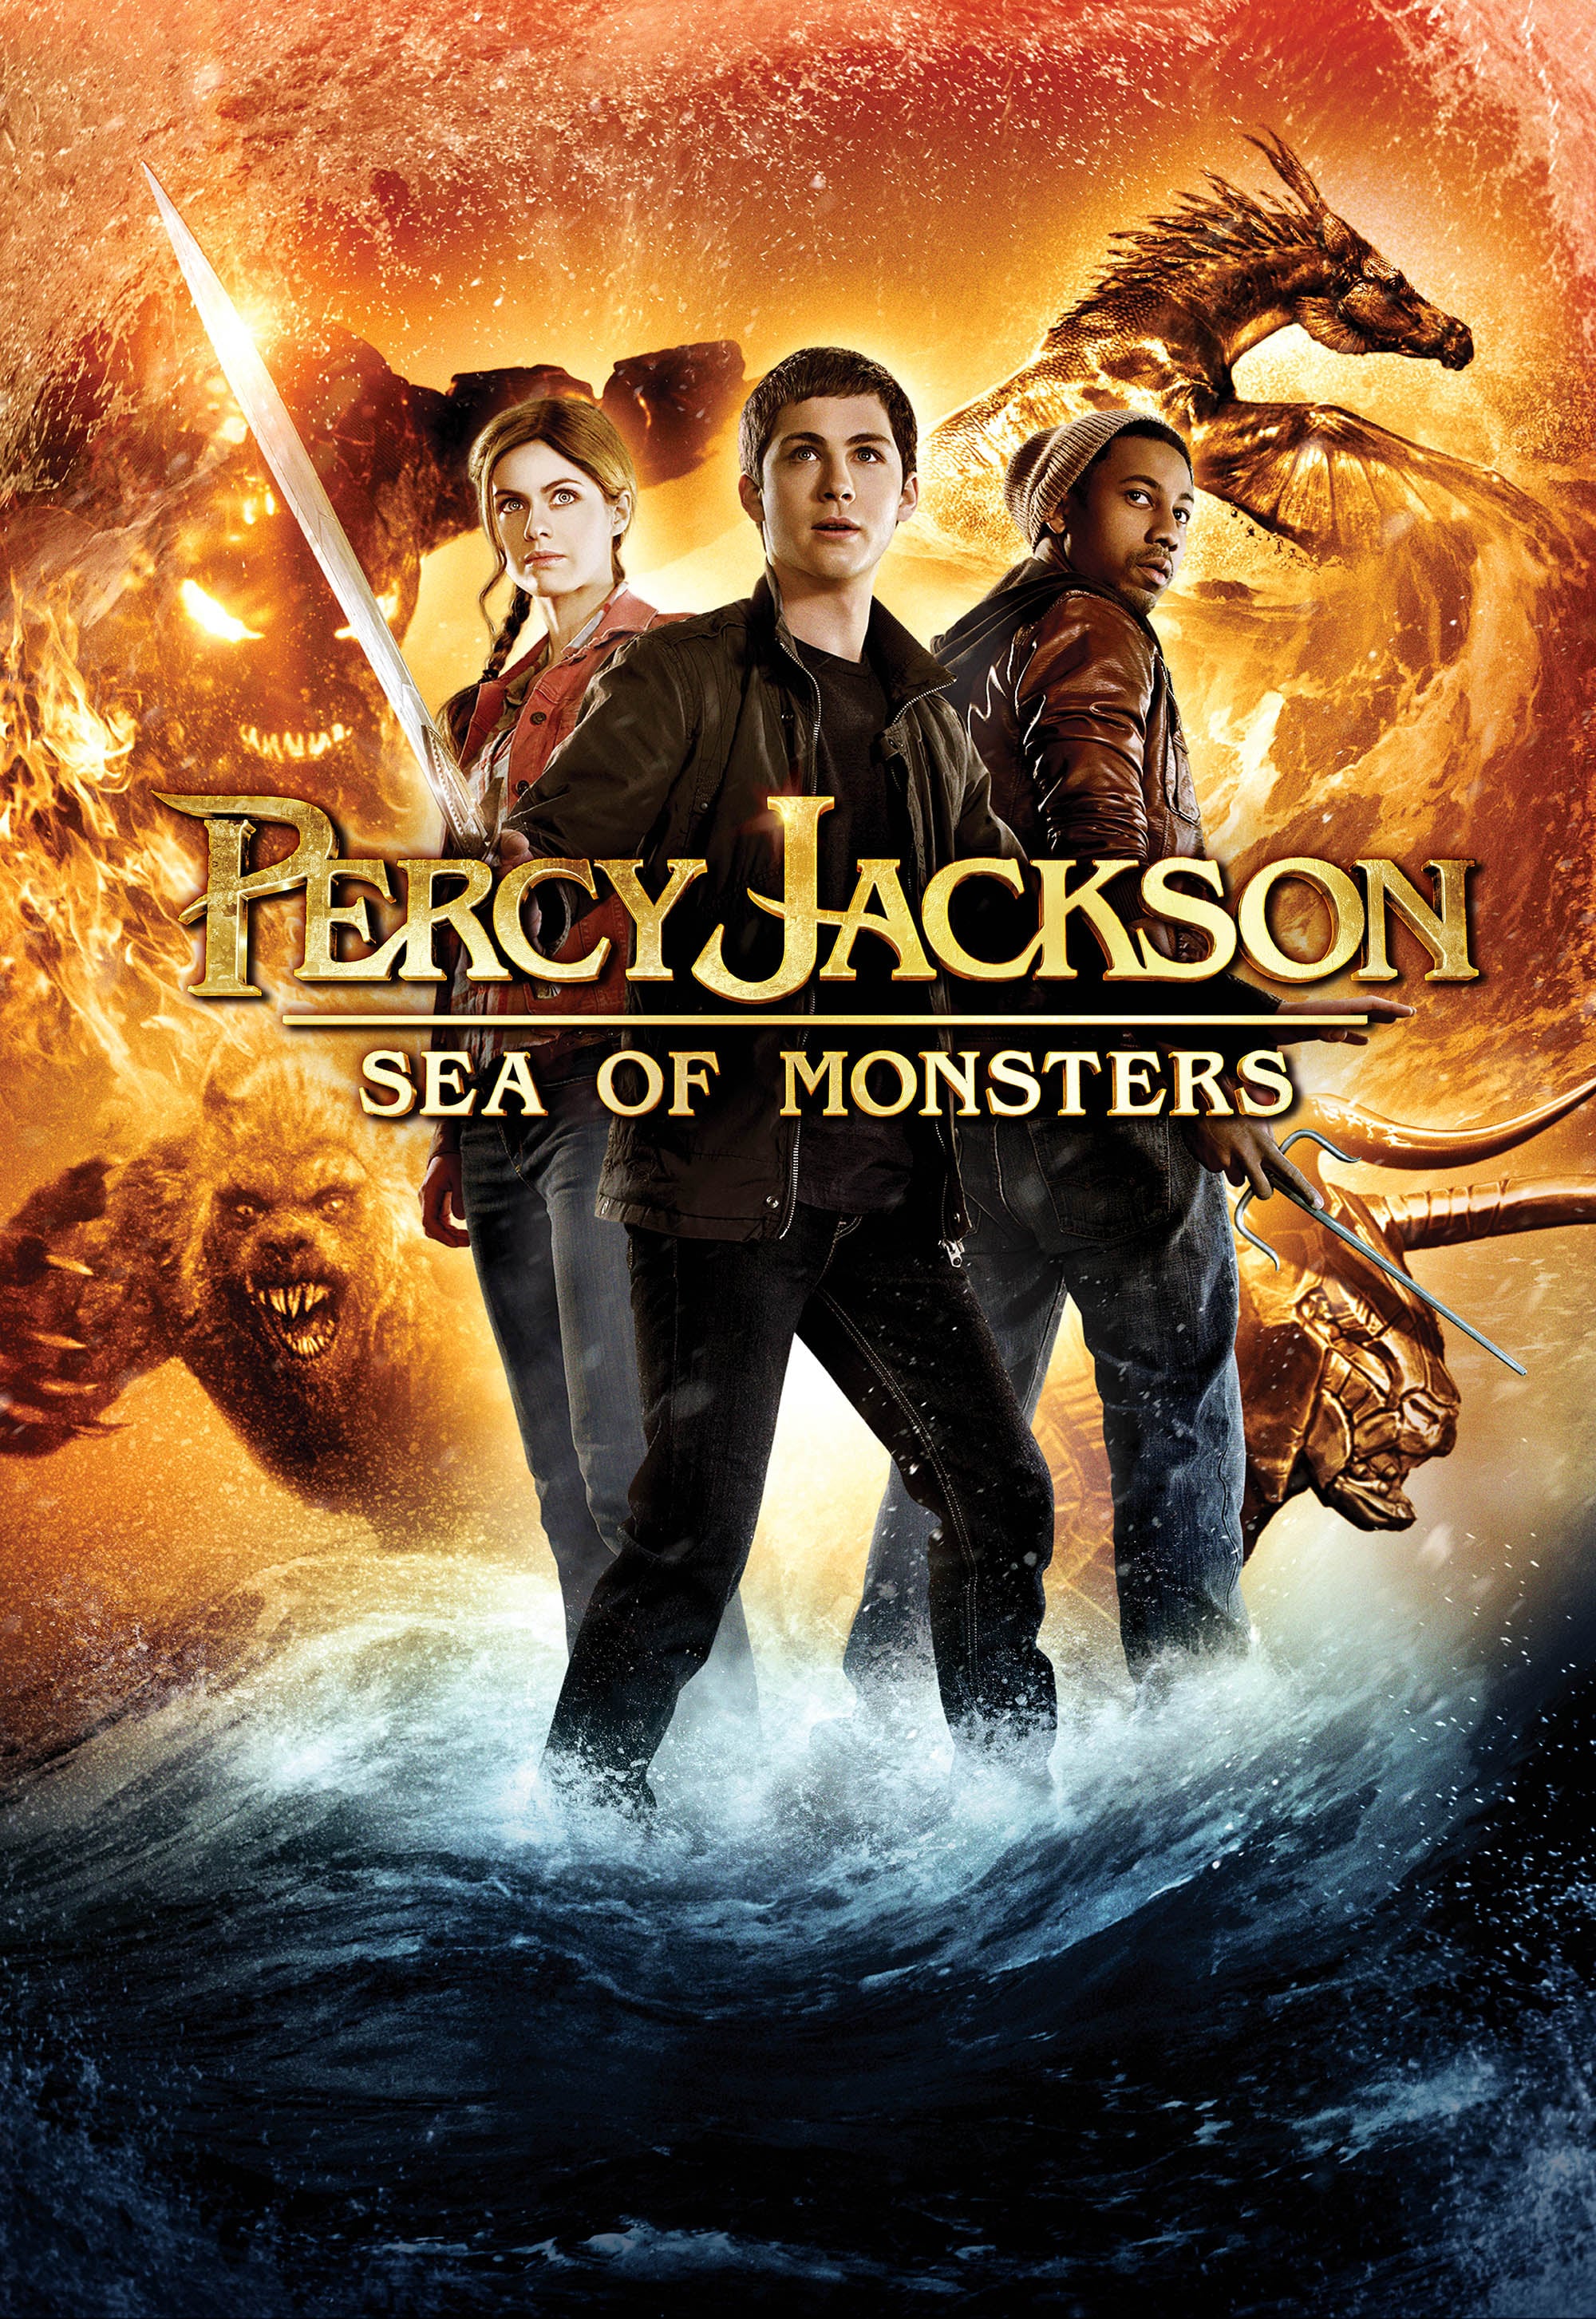 Caratula de PERCY JACKSON: SEA OF MONSTERS (PERCY JACKSON Y EL MAR DE LOS MONSTRUOS) 